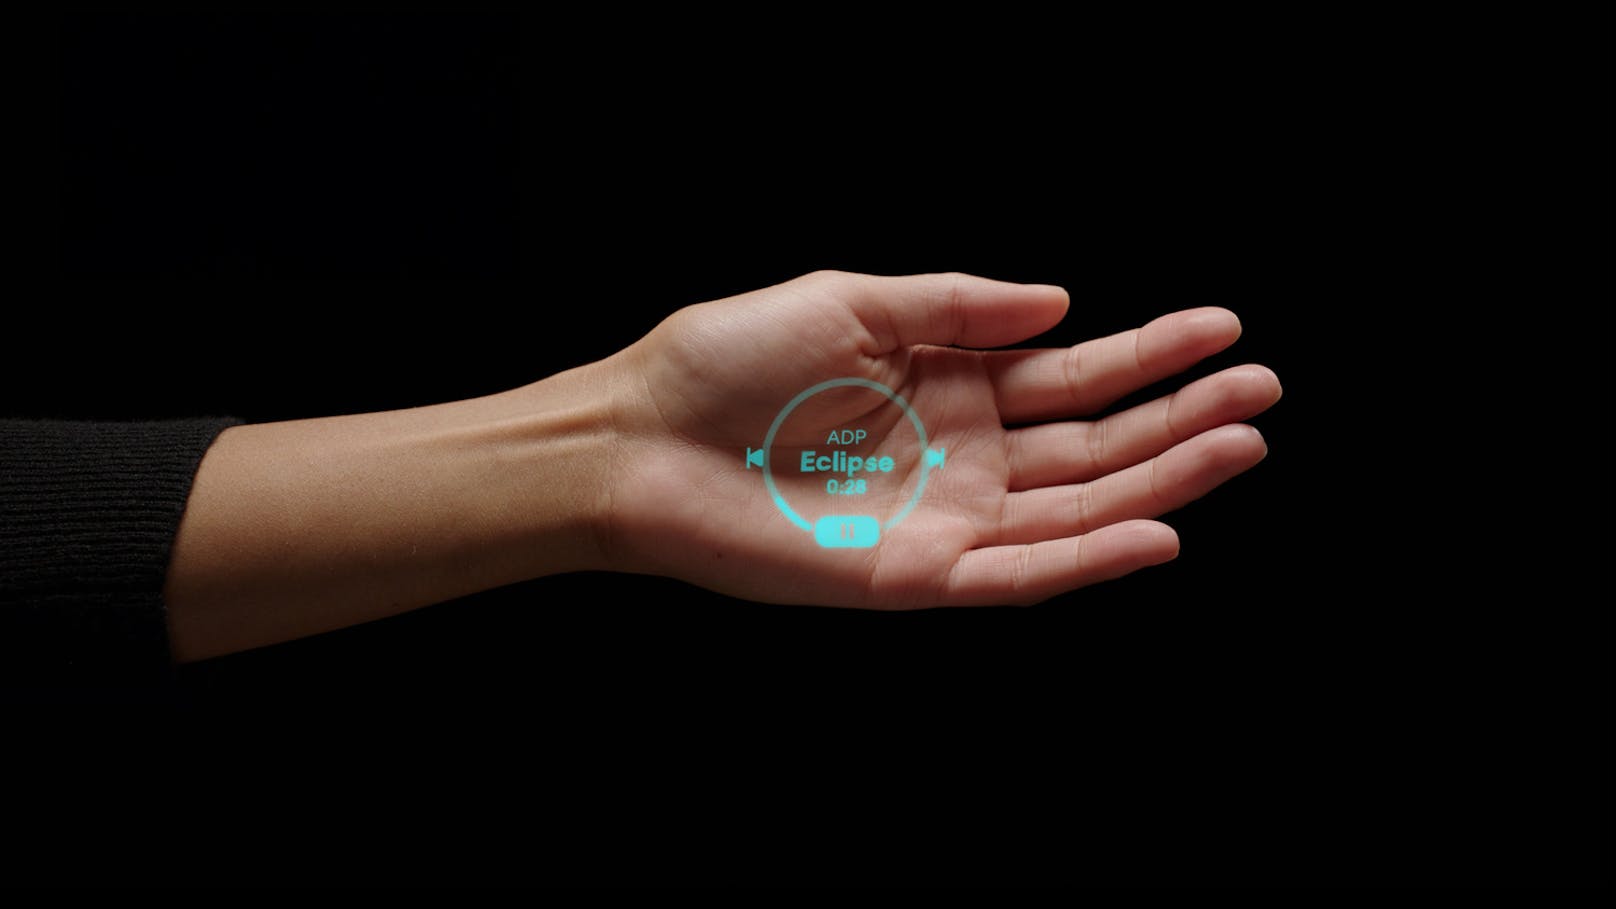 Der KI-Pin projiziert per Laser Informationen auf die Handfläche.